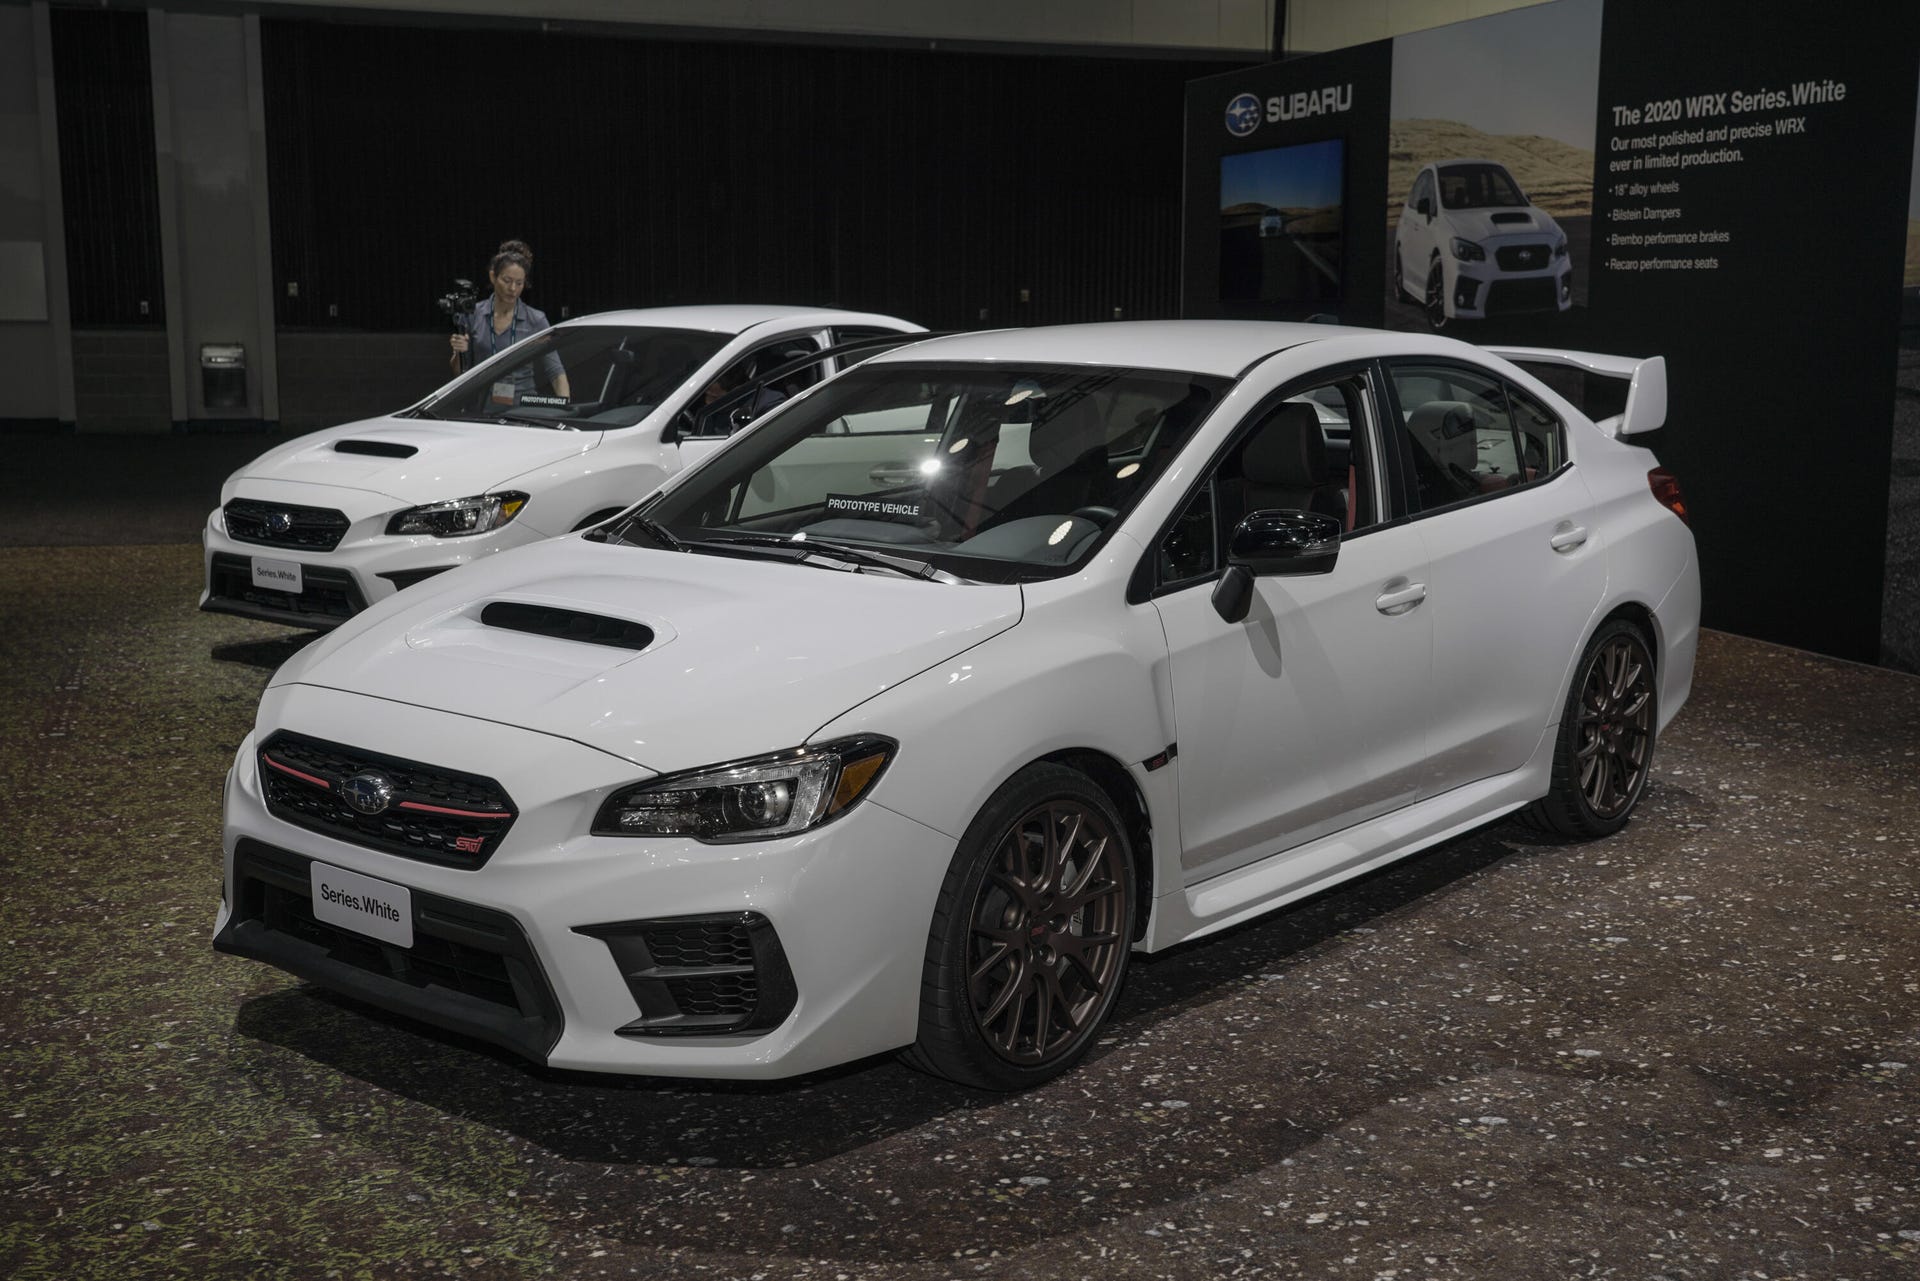 2020 Subaru WRX and STI Series White